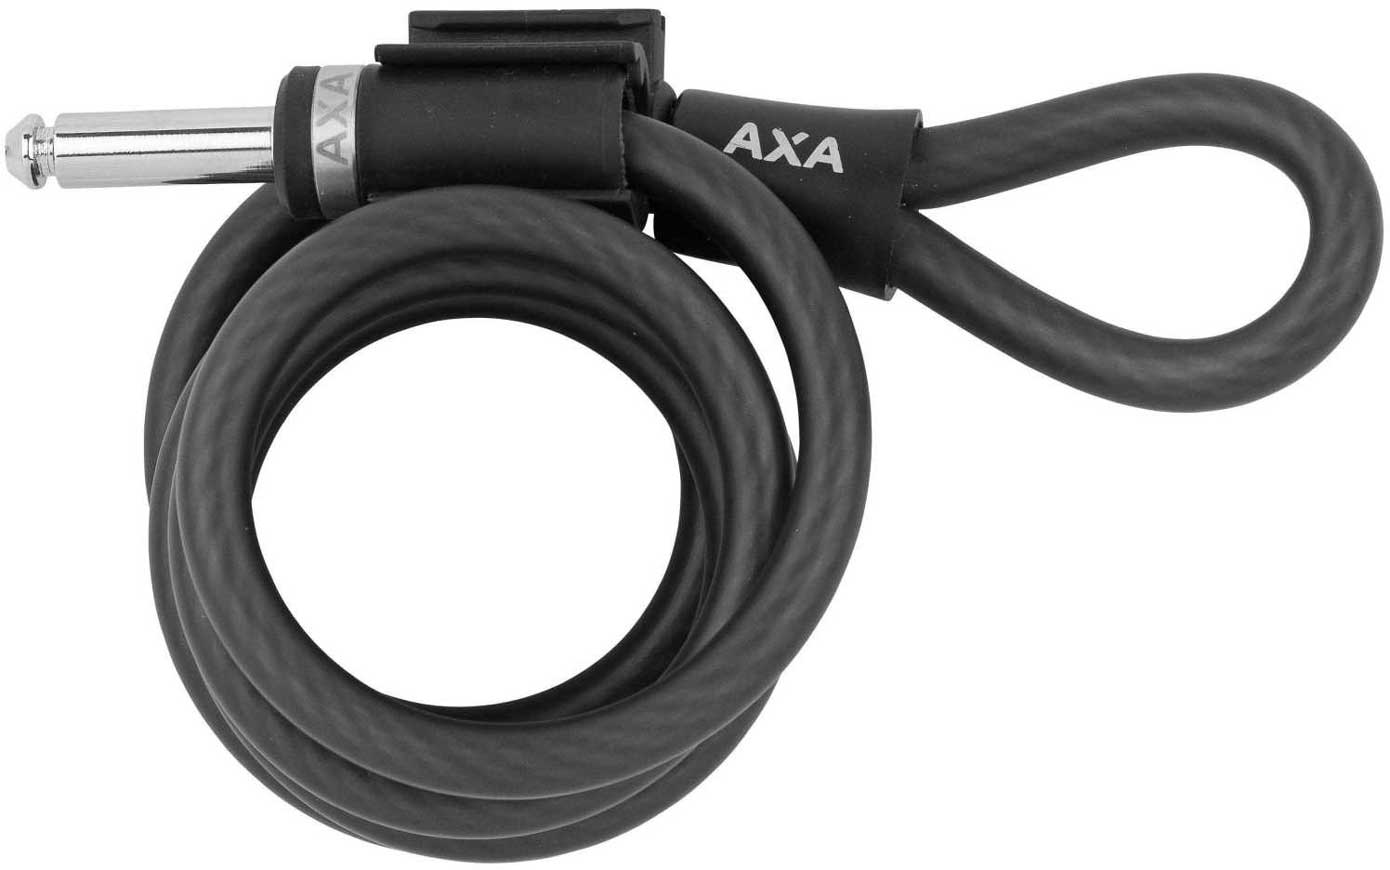 Plugin Kabel für AXA Fahrradschlösser